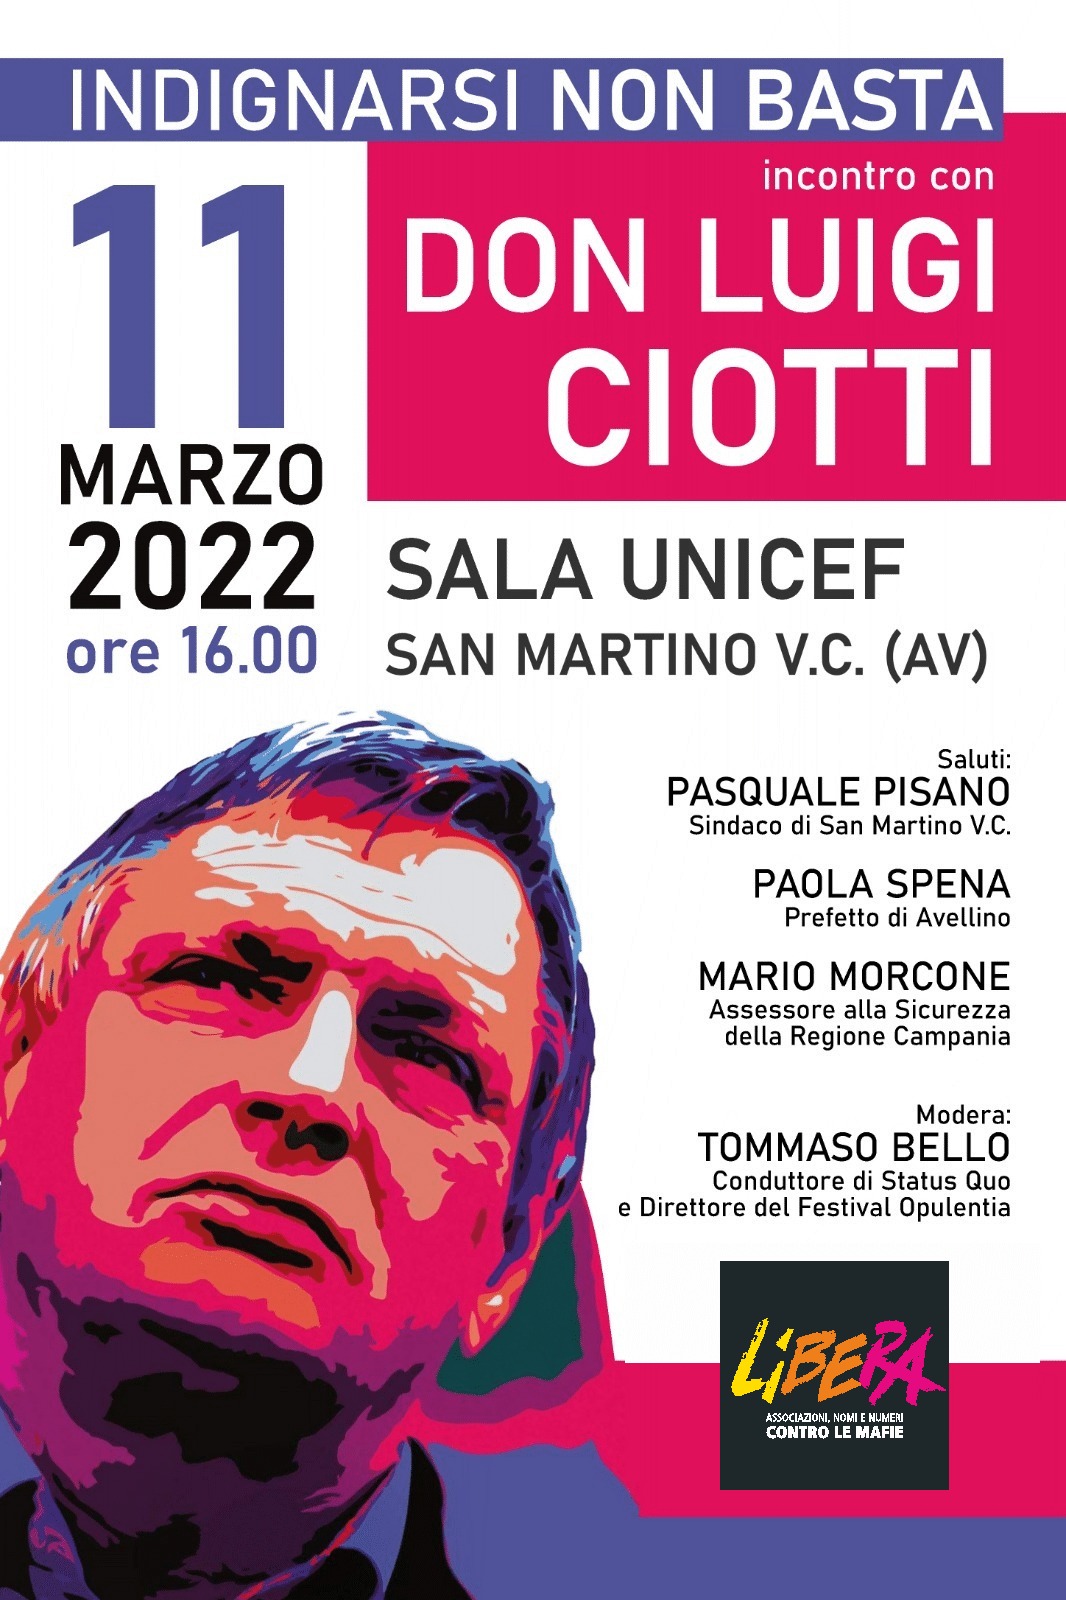 Contrasto alla criminalità, venerdi prossimo a San Martino Valle Caudina incontro con Don Luigi Ciotti